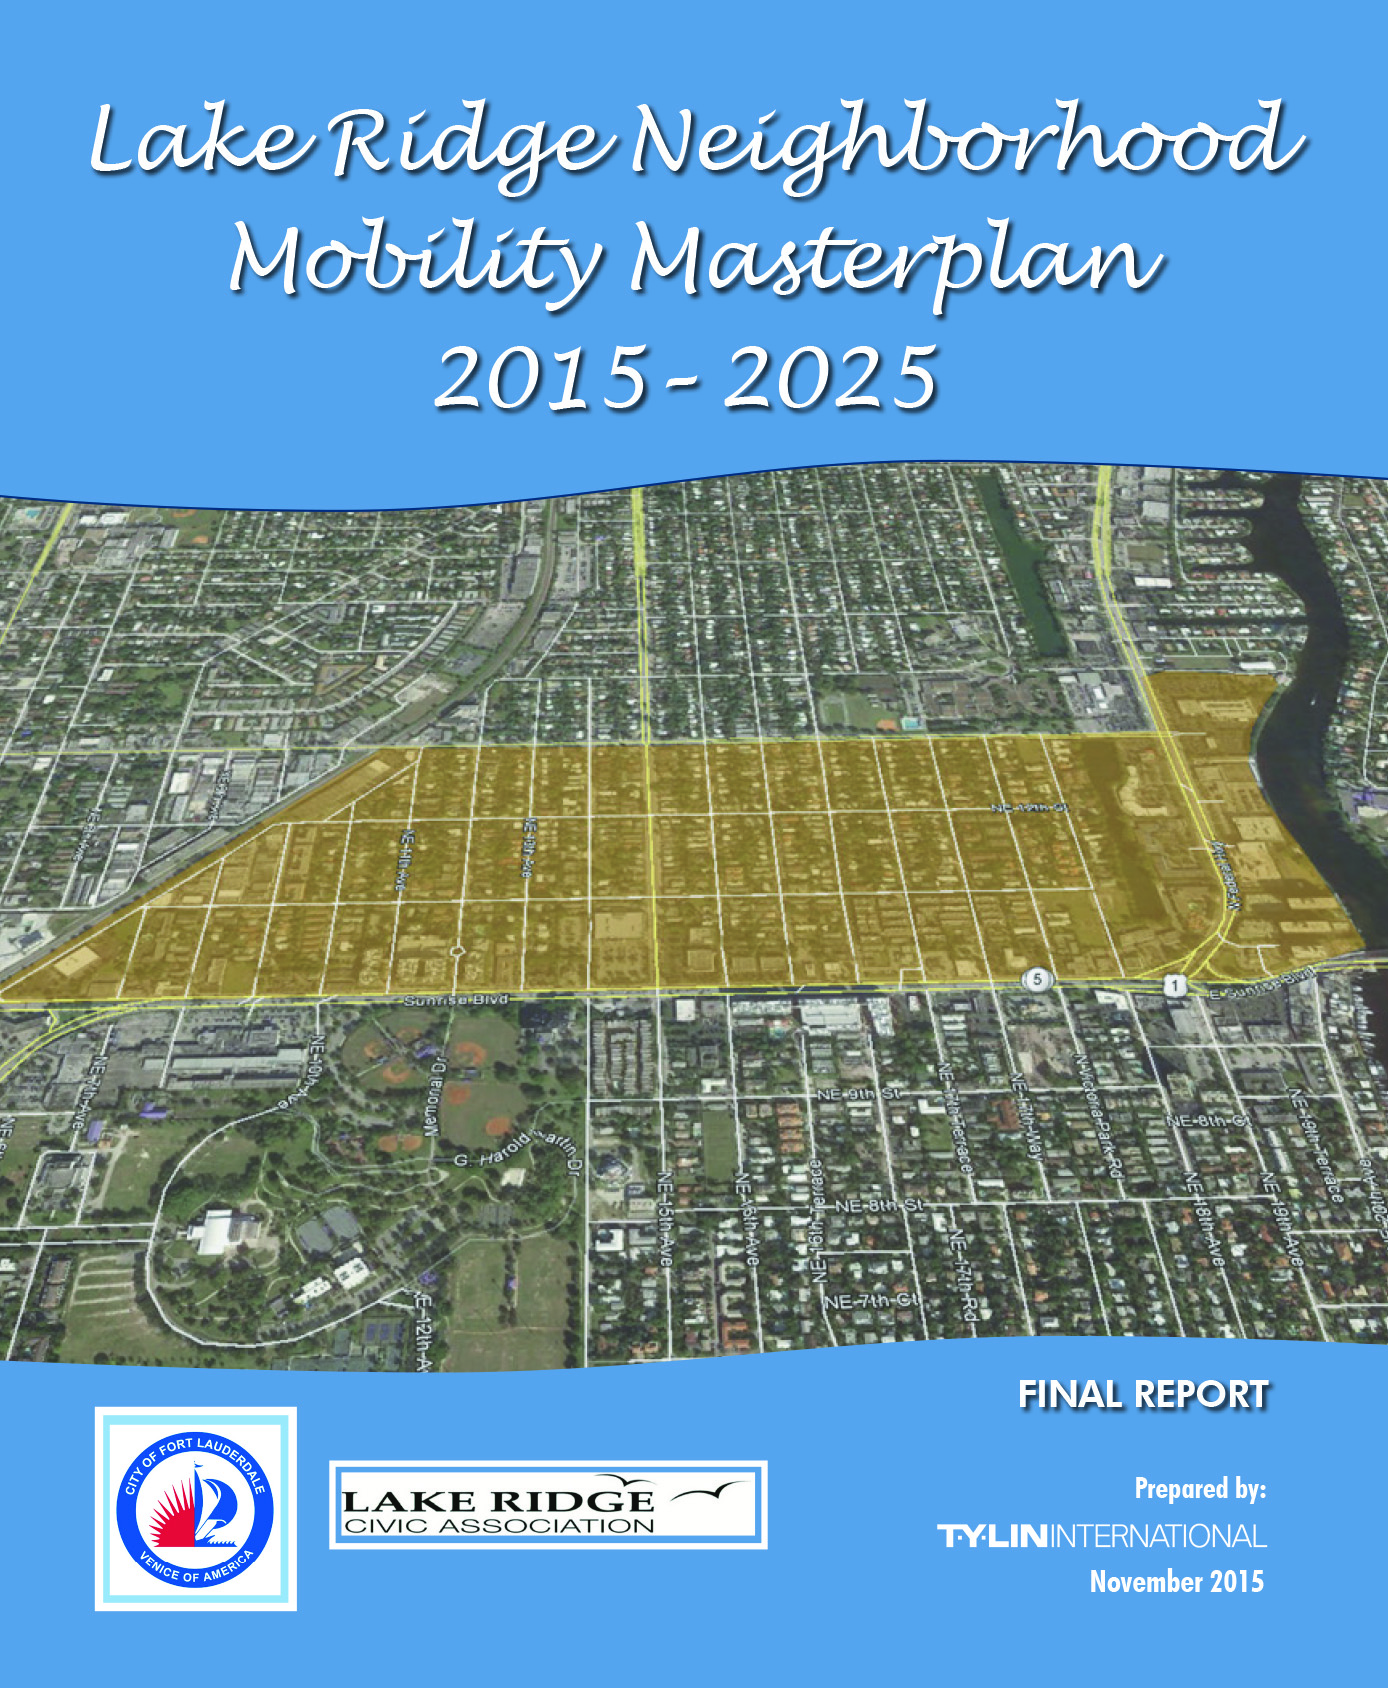 Lake Ridge Mobility Masterplan